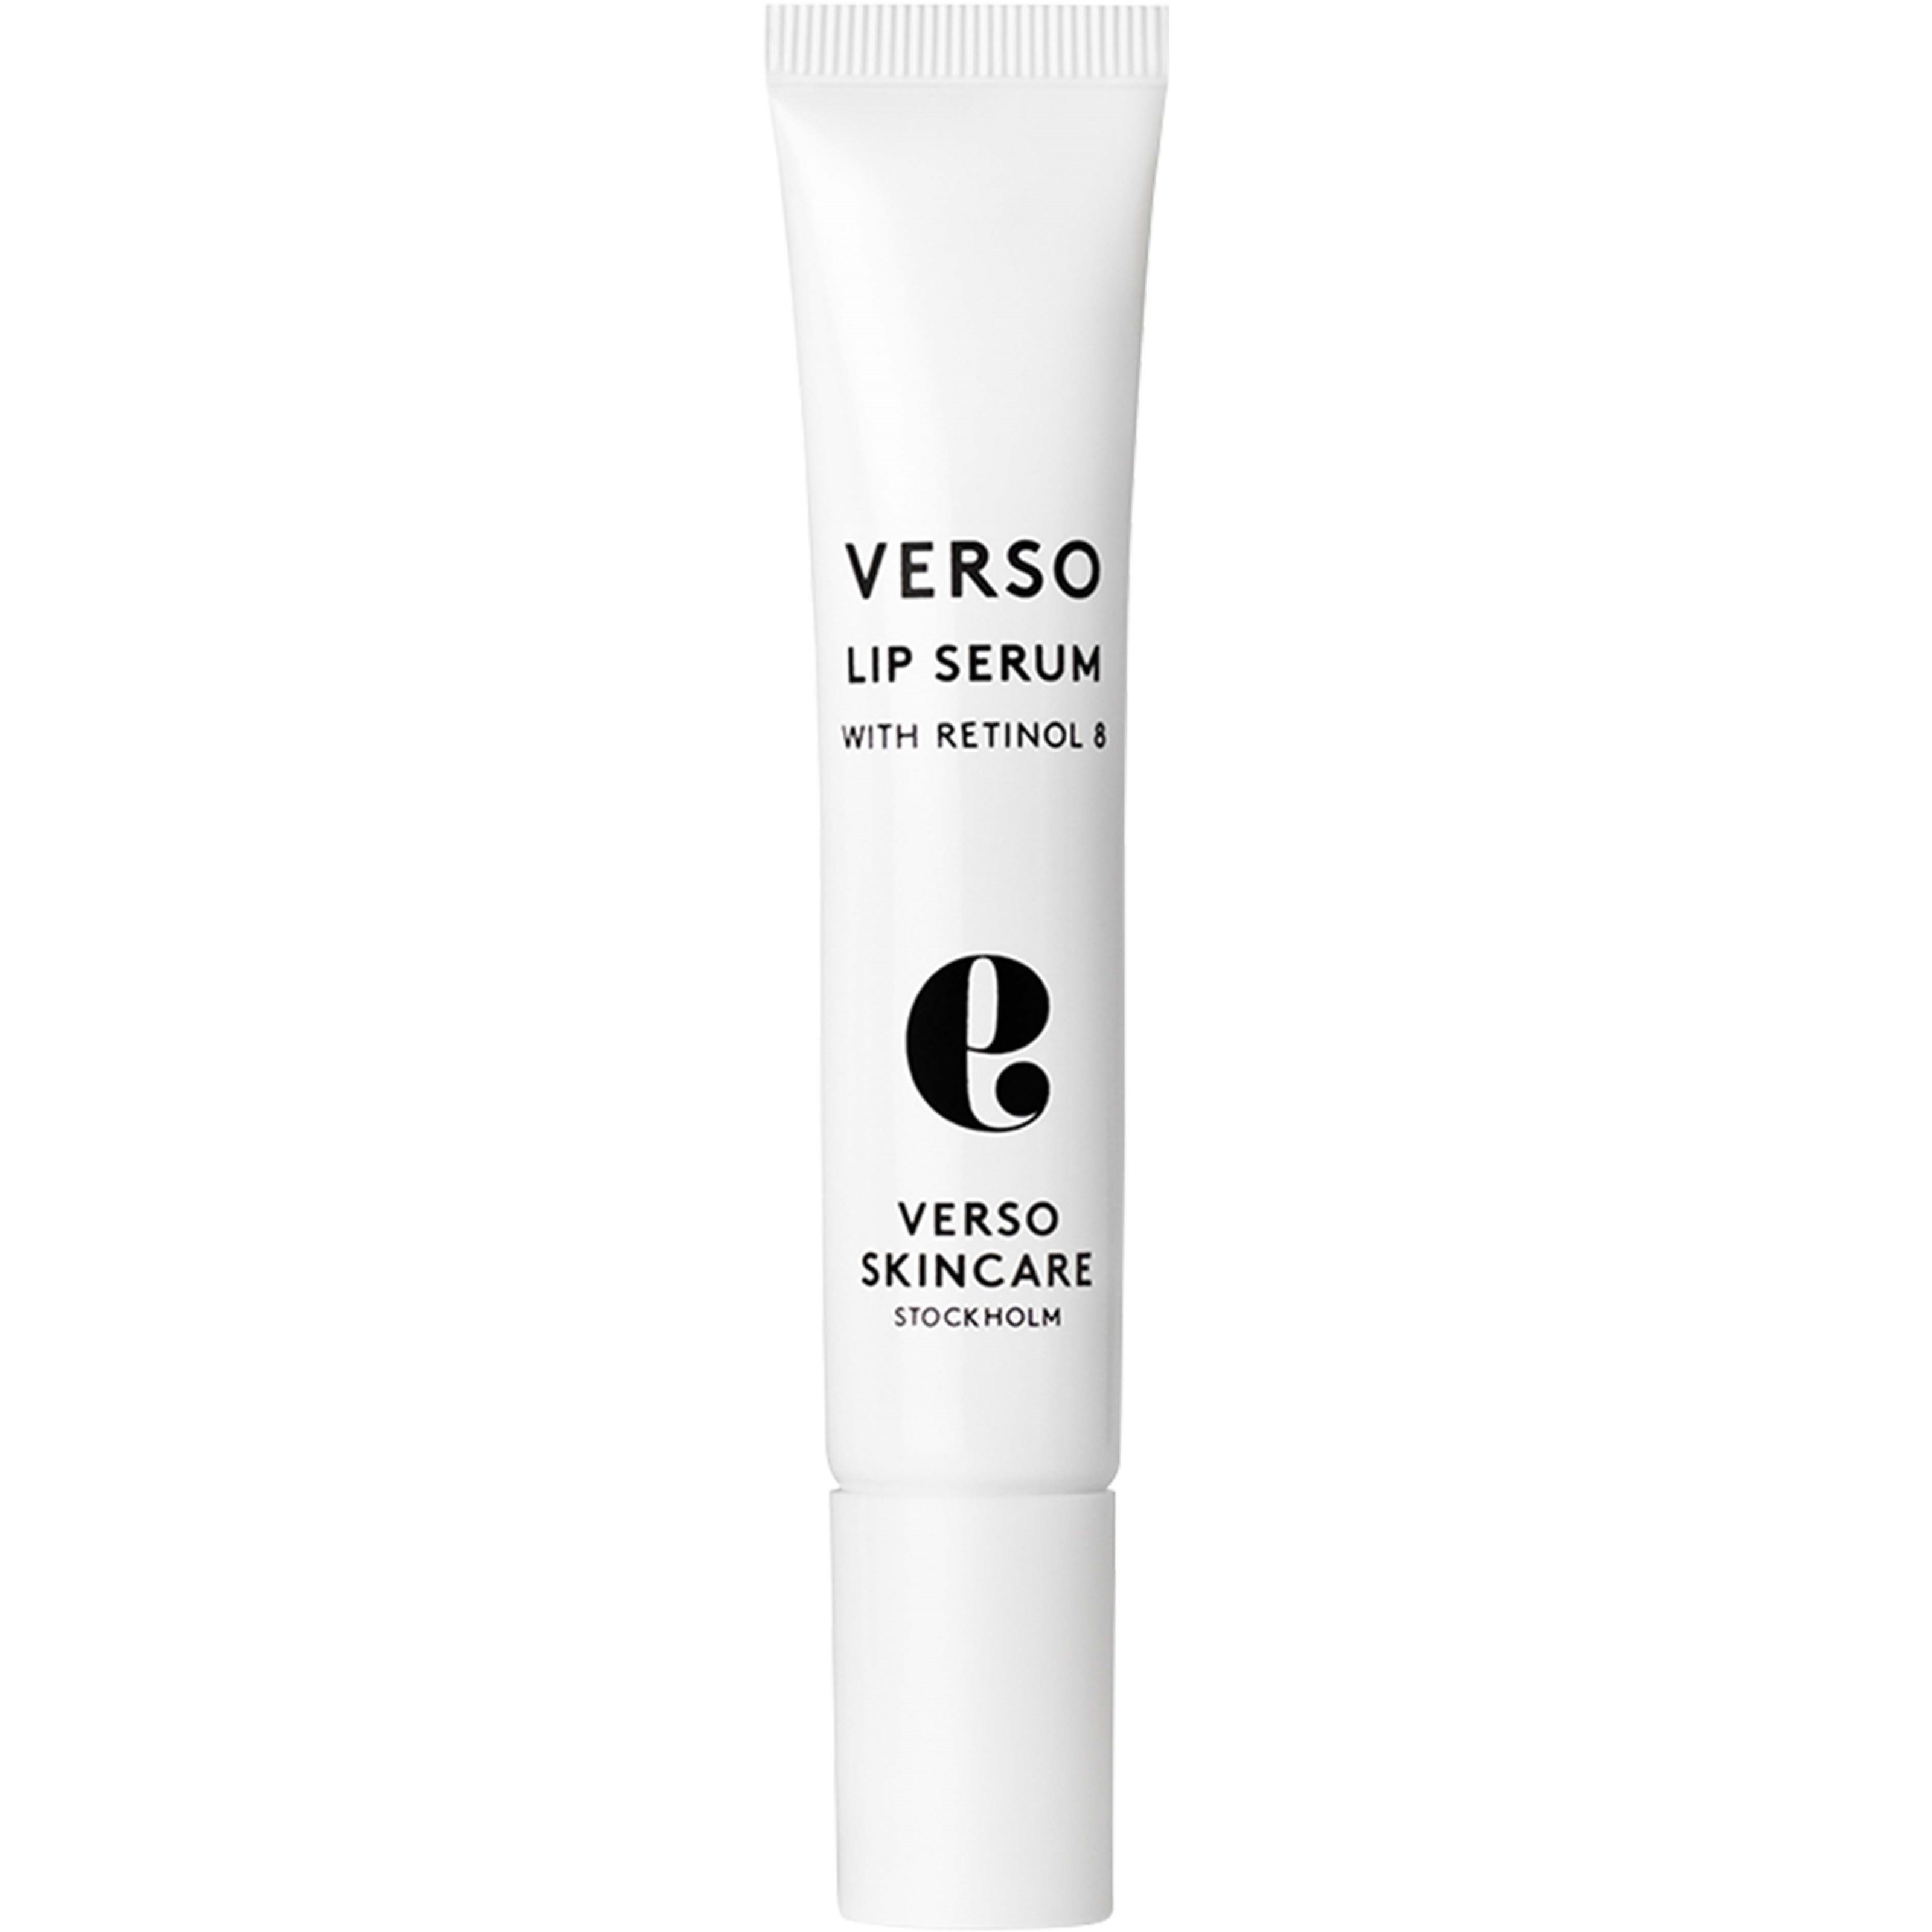 Bilde av Verso Skincare N°9 Lip Serum With Retinol 8 15 Ml